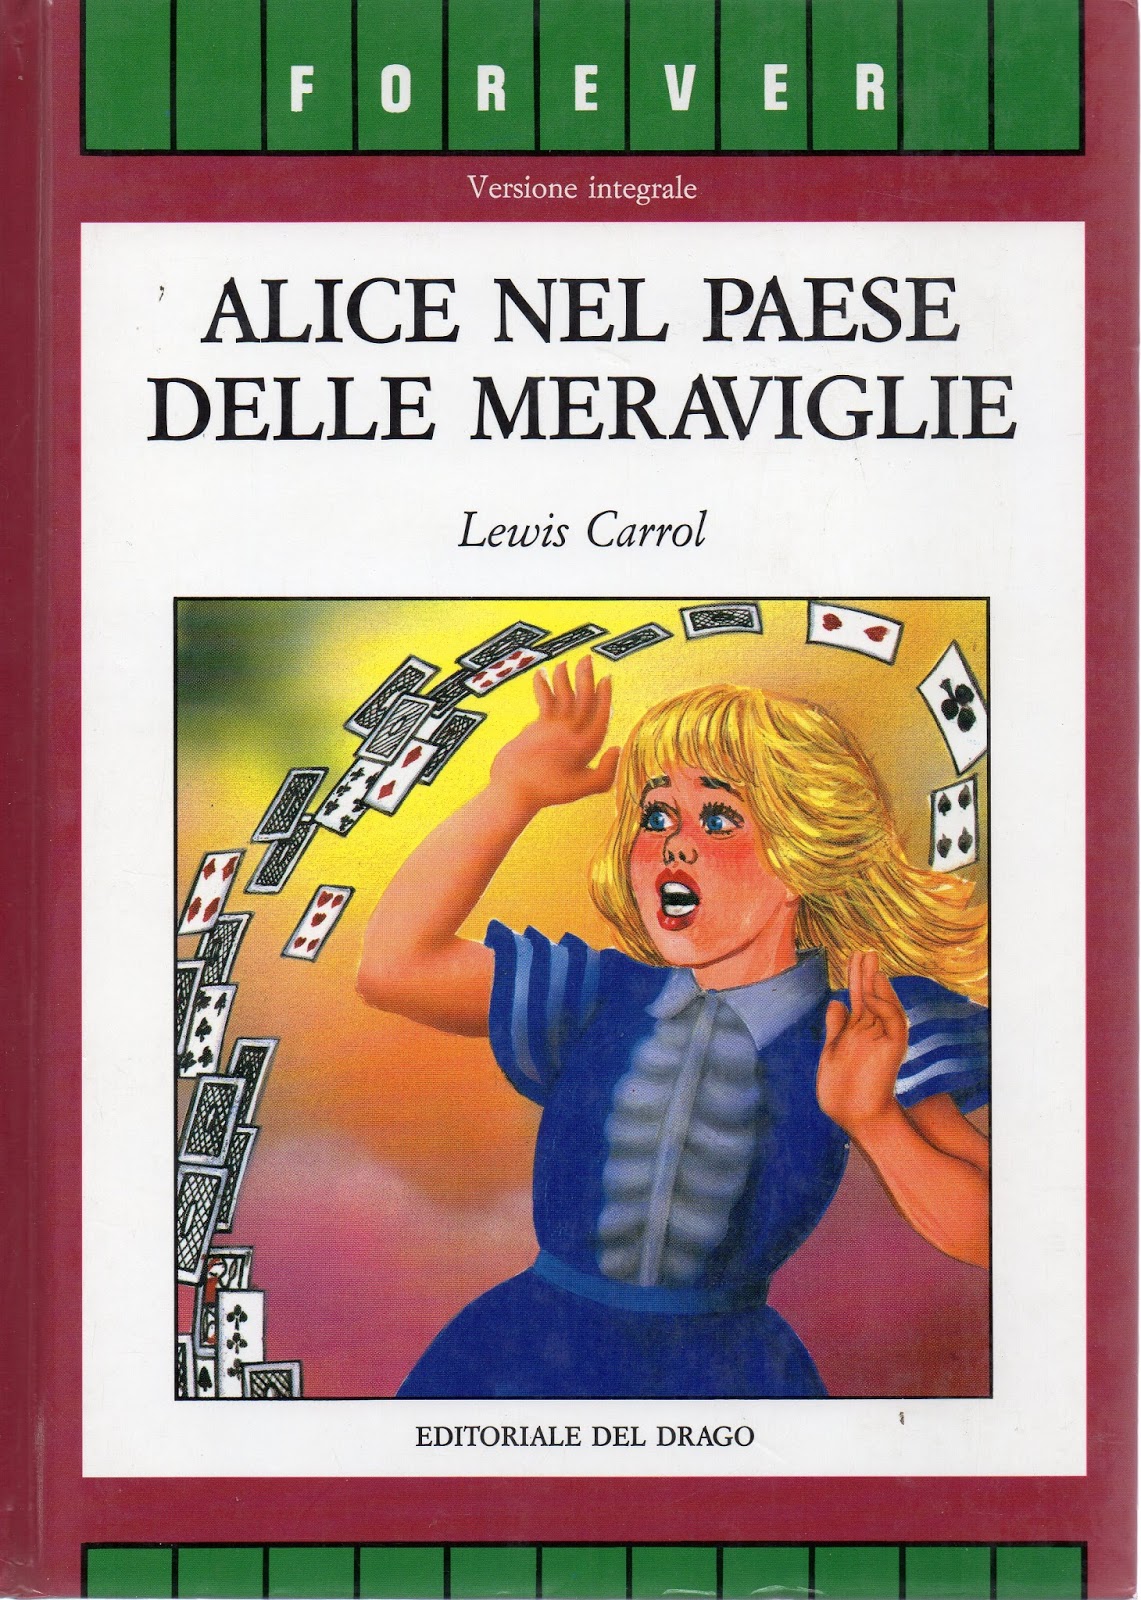 Le avventure di Alice nel Paese delle Meraviglie - Wikipedia